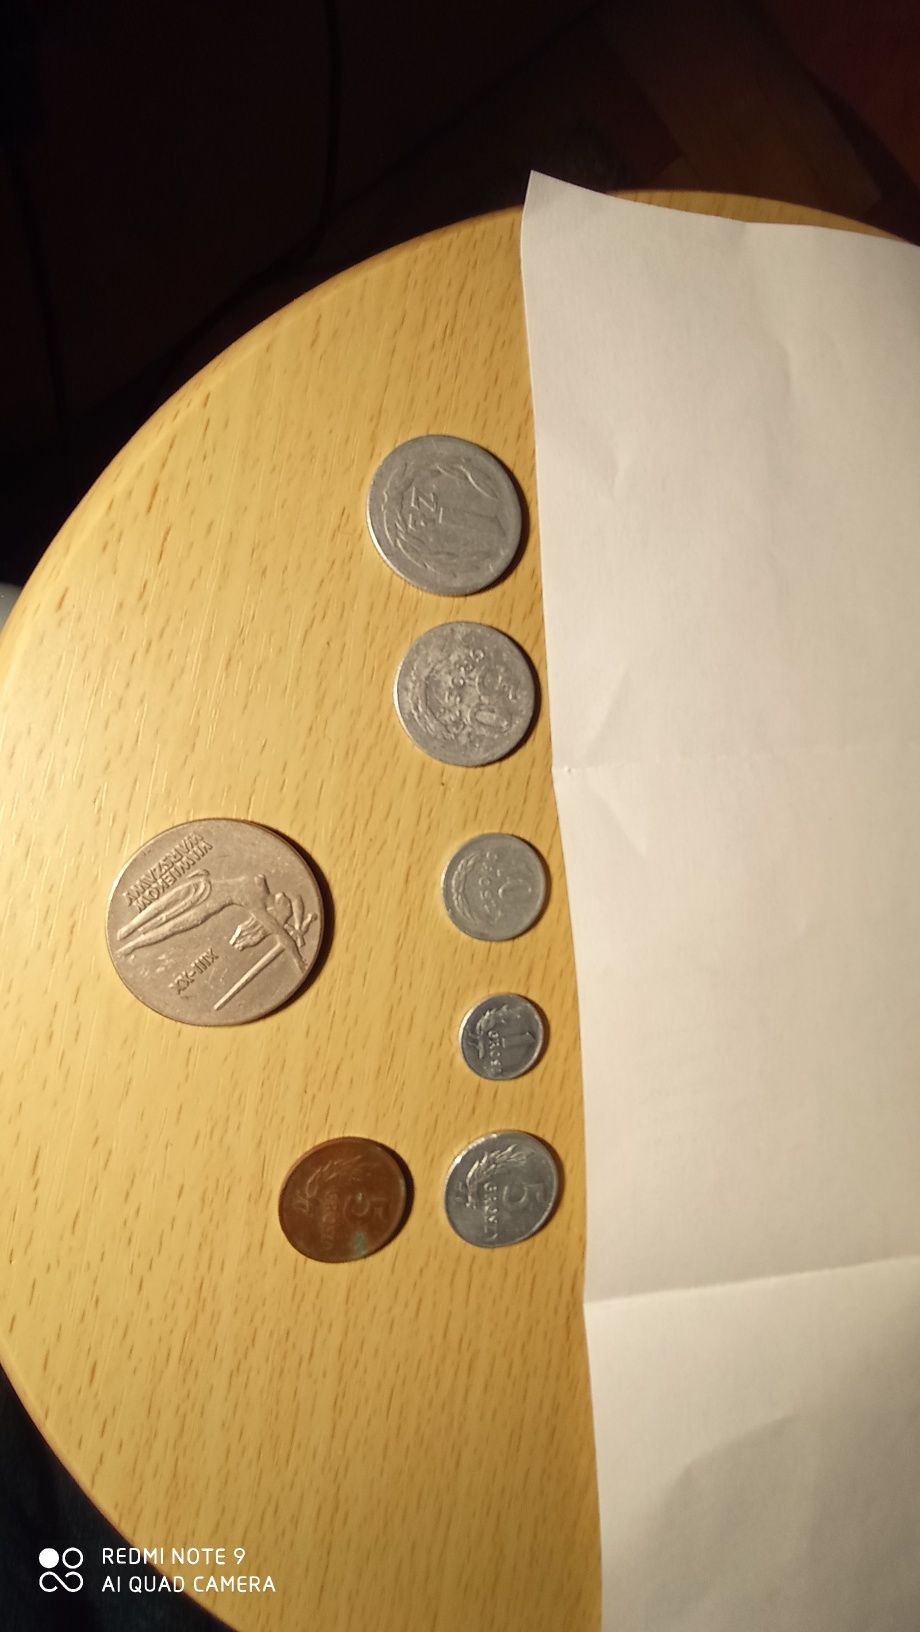 Stare monety że znakiem mennicy i bez